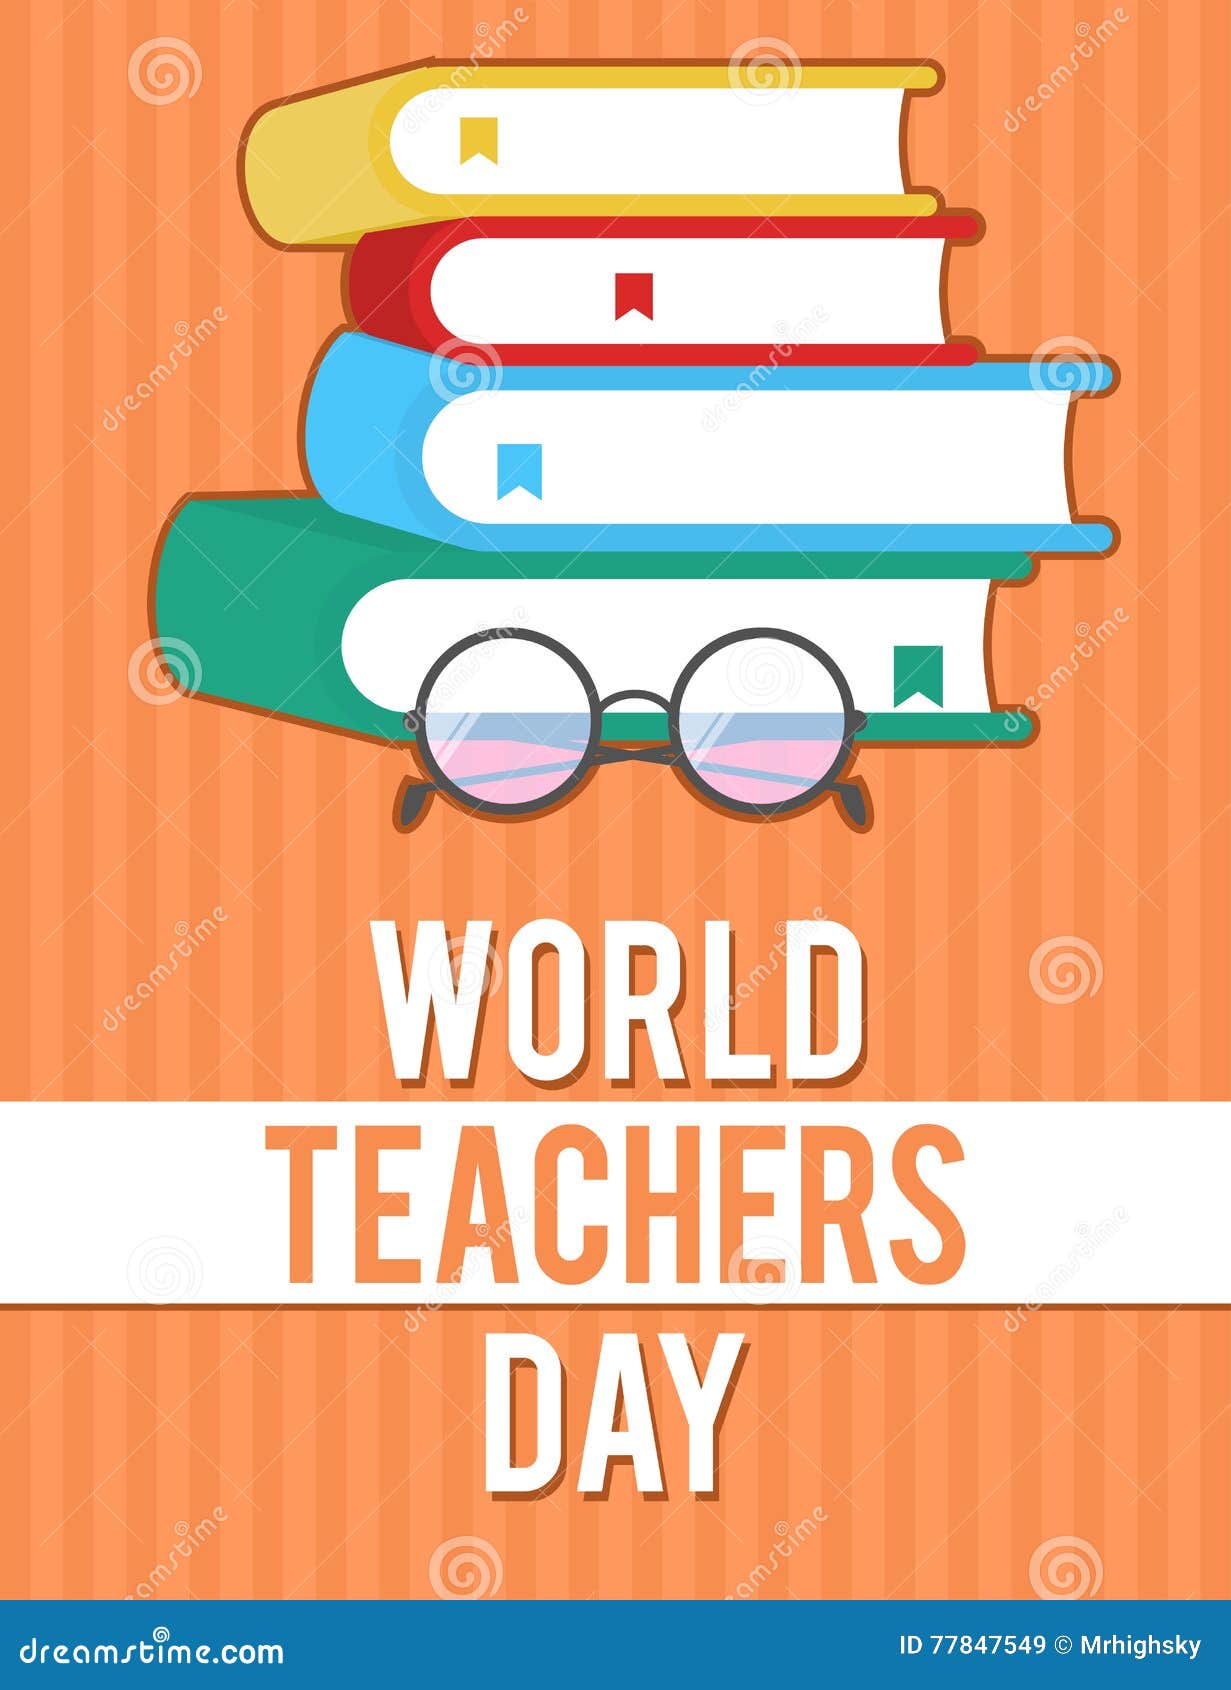 World Teachers Day Poster Design Stock Vector - Illustration of ...